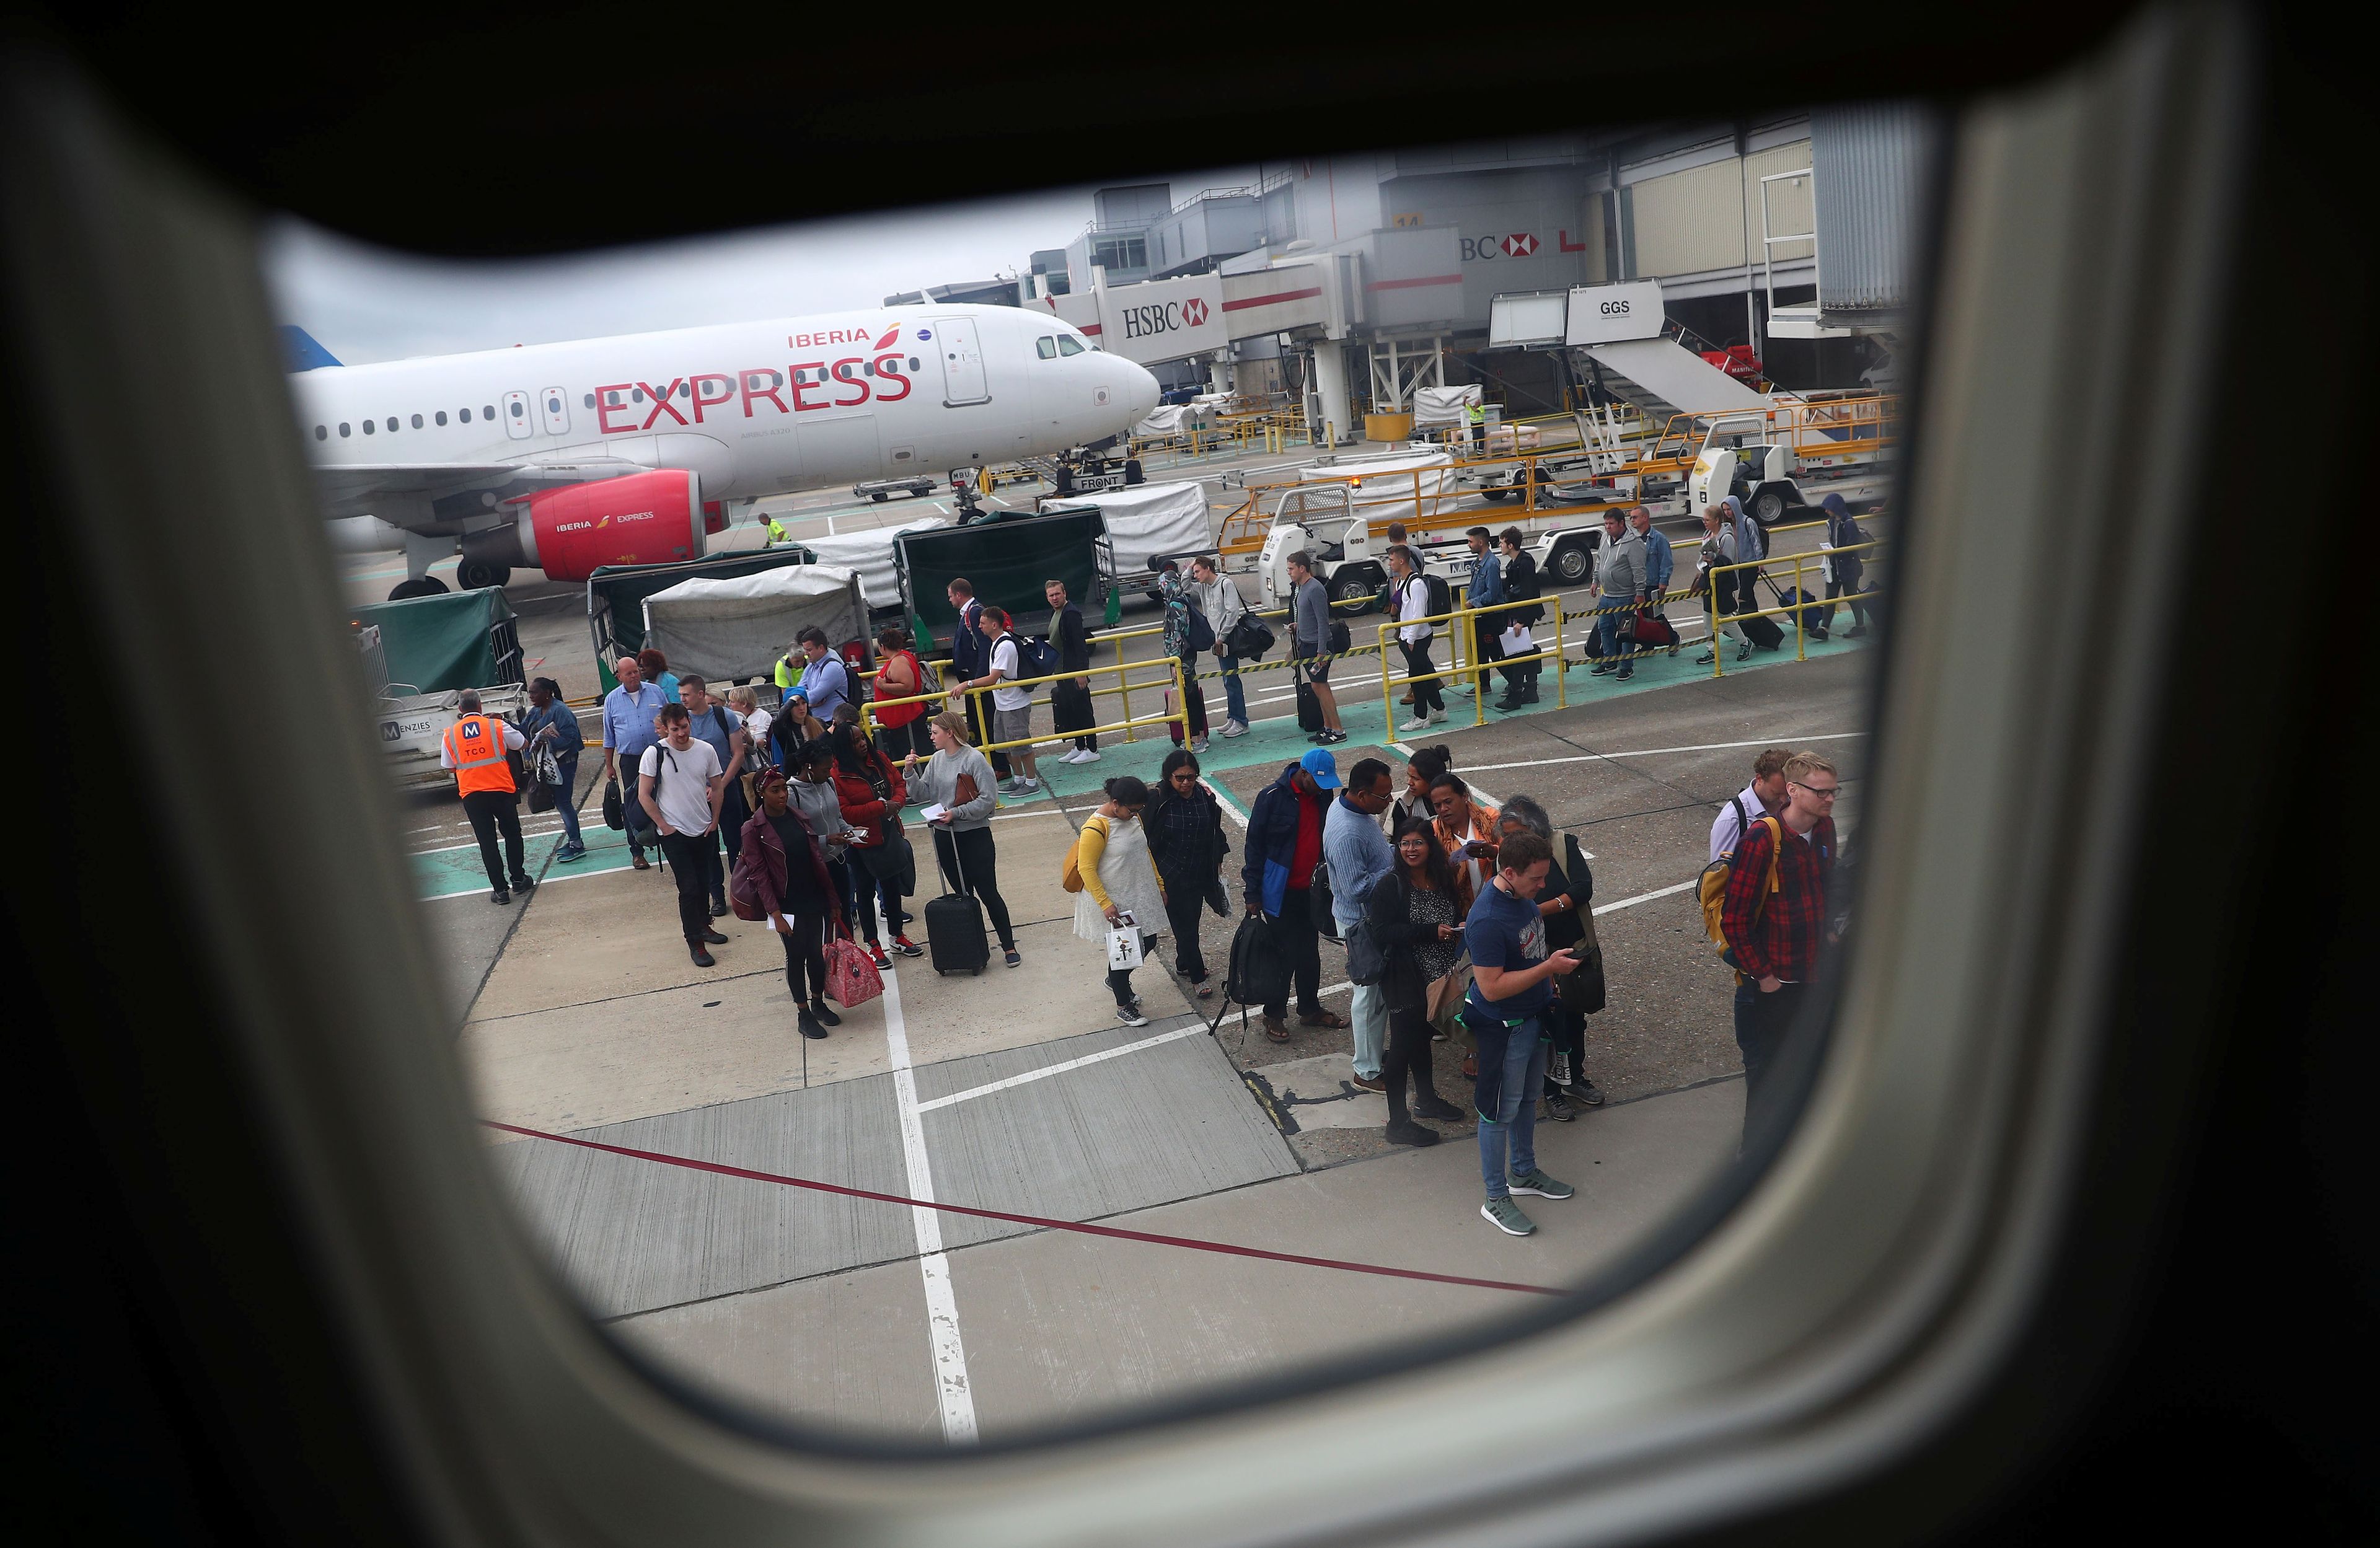 Los pasajeros esperan para embarcar en un vuelo de Ryanair mientras un avión de Iberia Express espera en su puesto en el aeropuerto de Gatwick en Londres, Gran Bretaña.